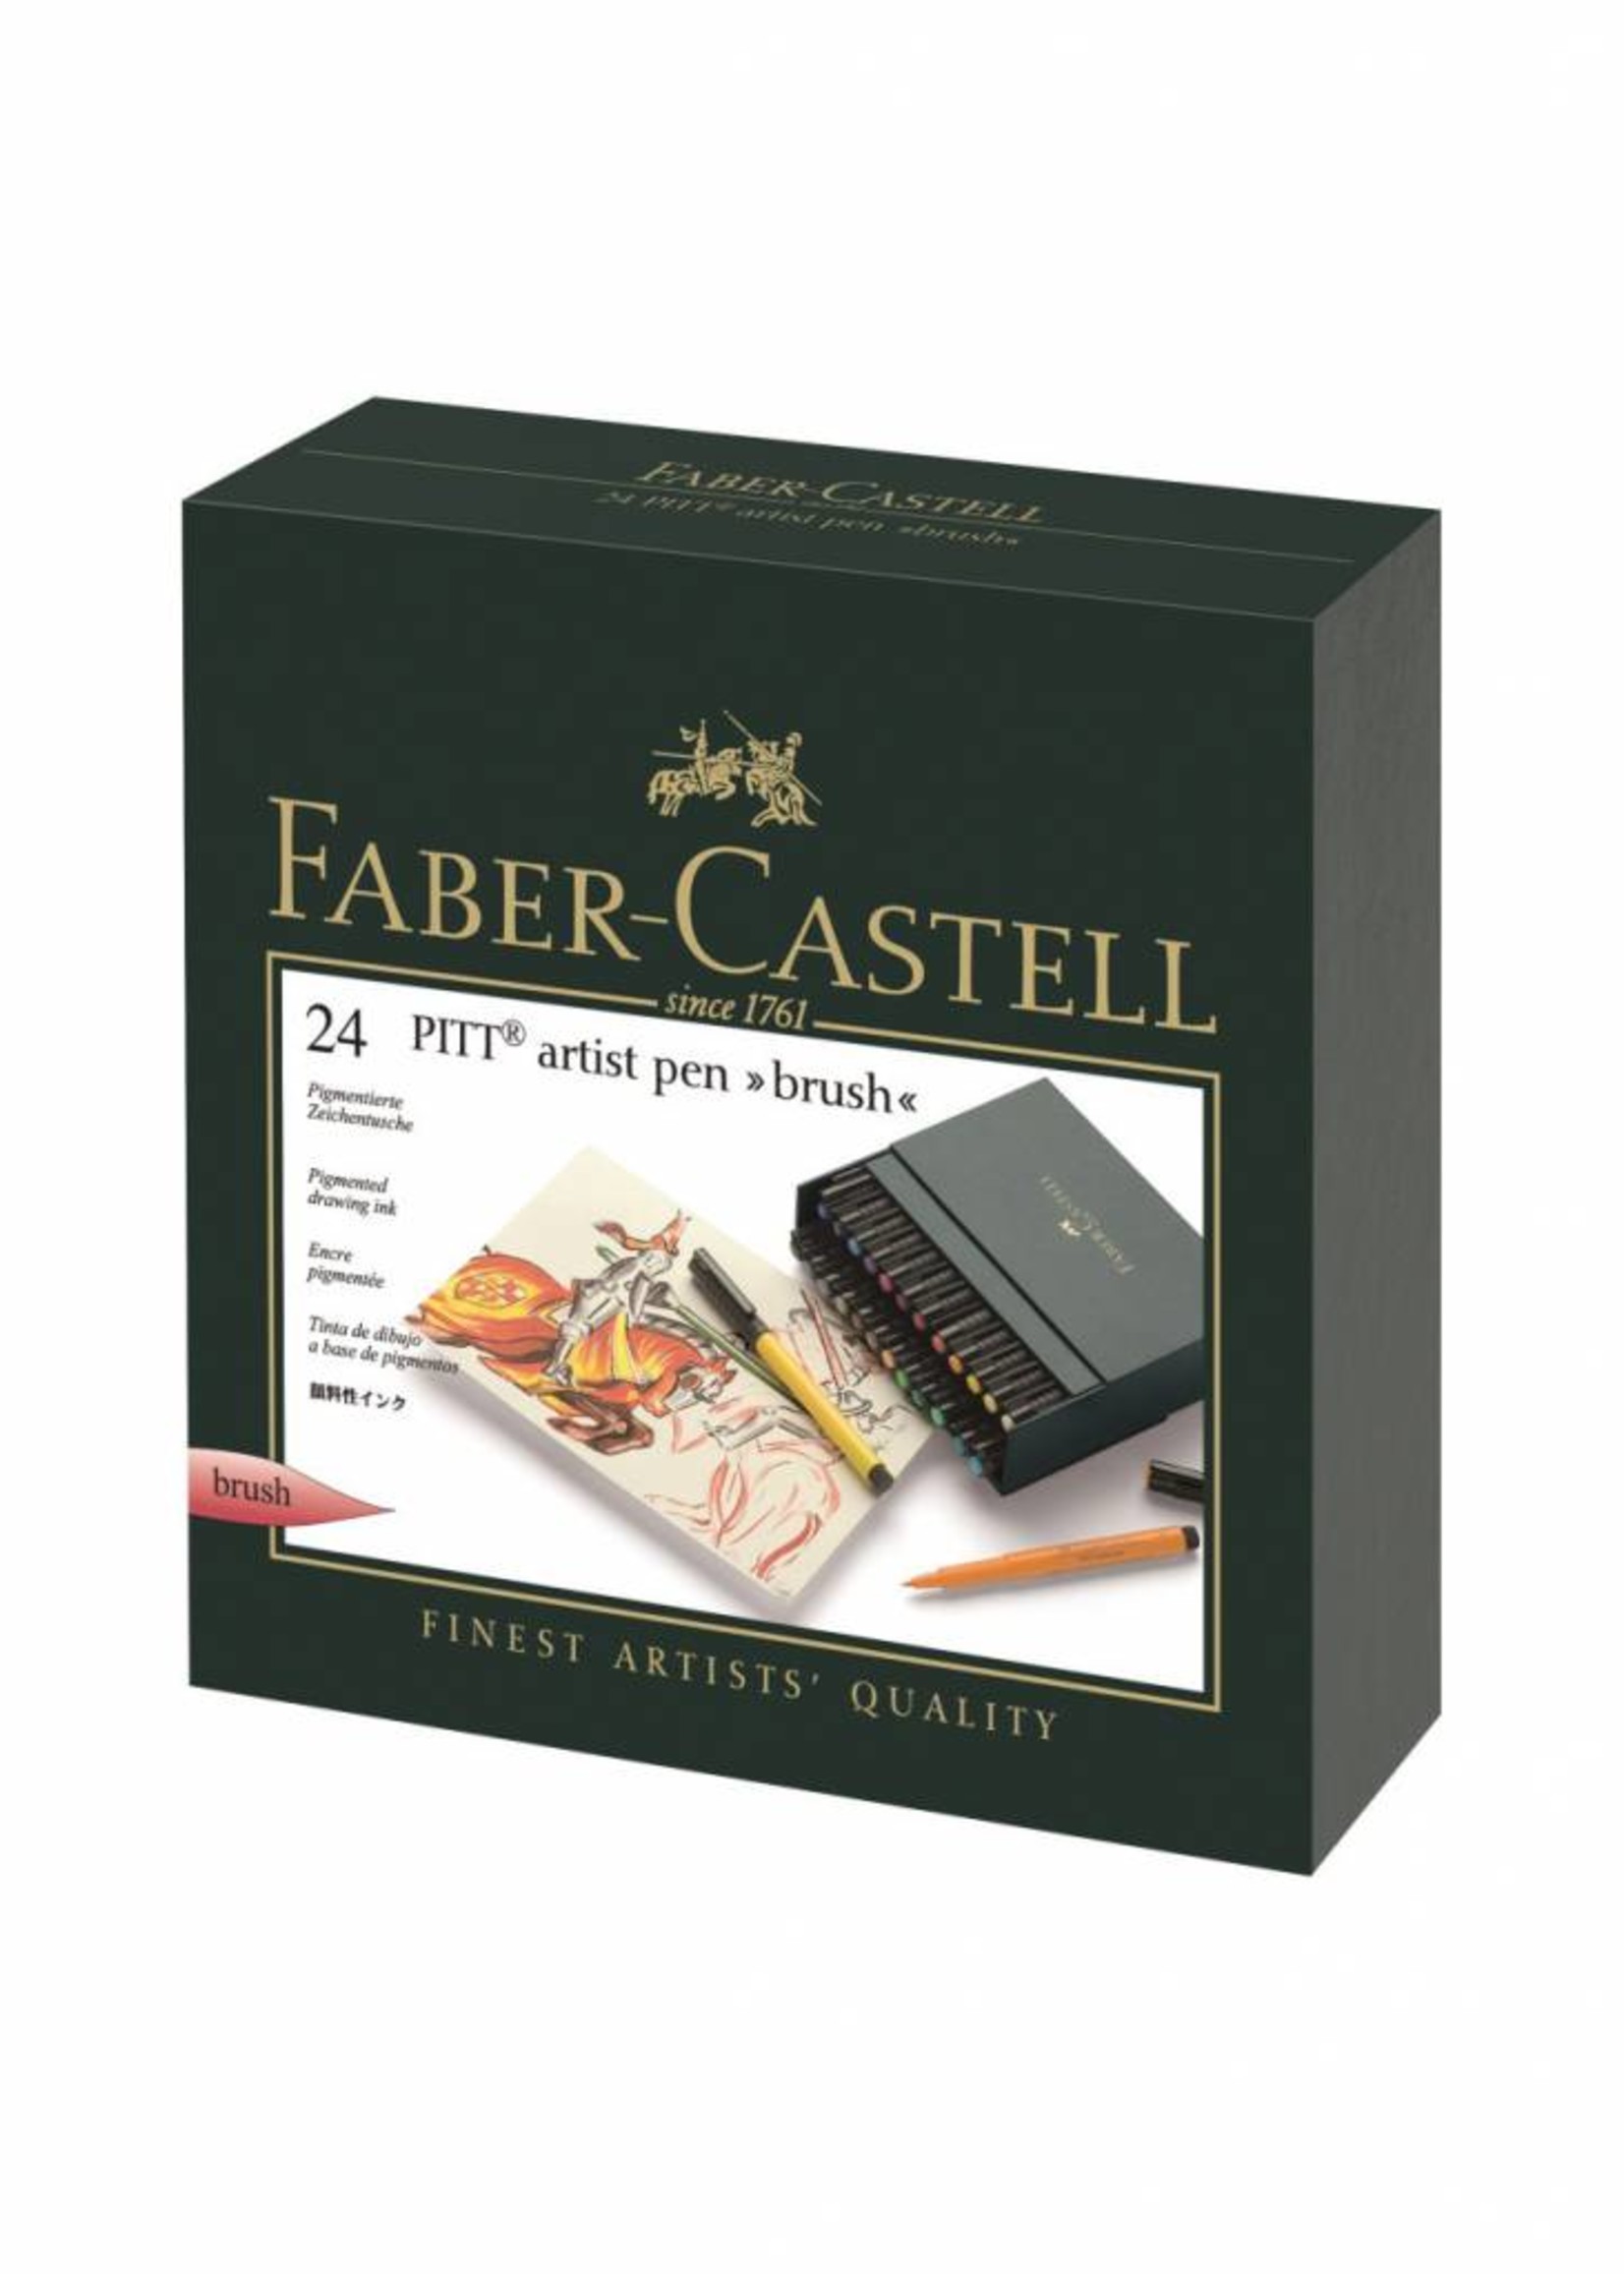 FABER CASTELL PITT ARTIST PEN BRUSH SET/24 STUDIO BOX